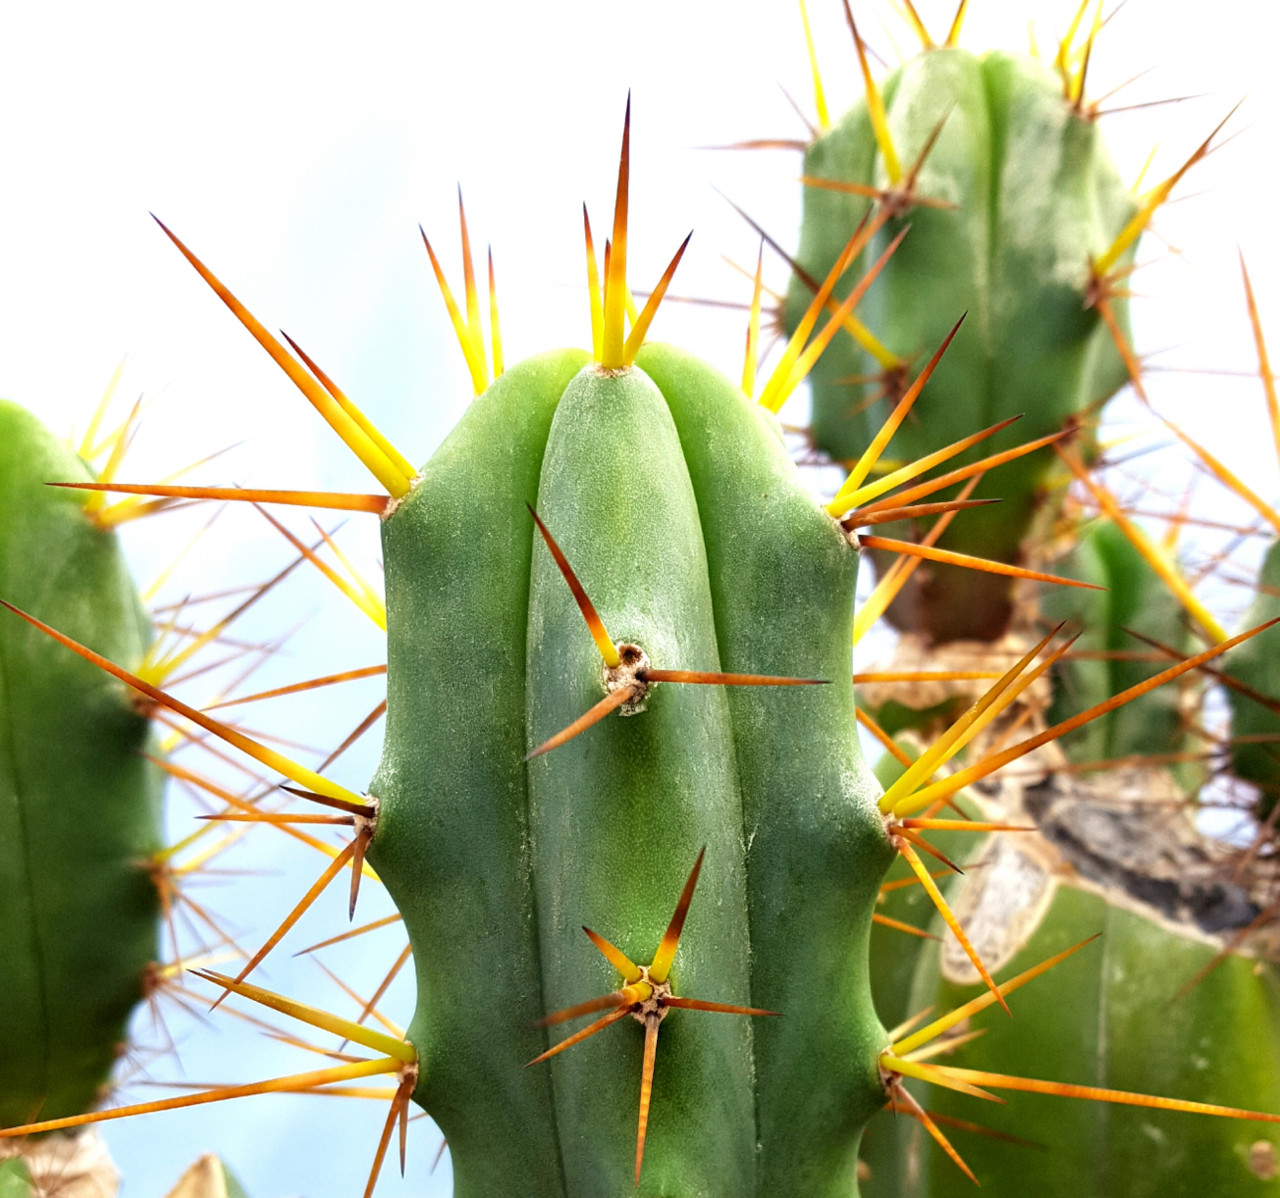 bridgesii cactus with link to buy trichocereus cacti